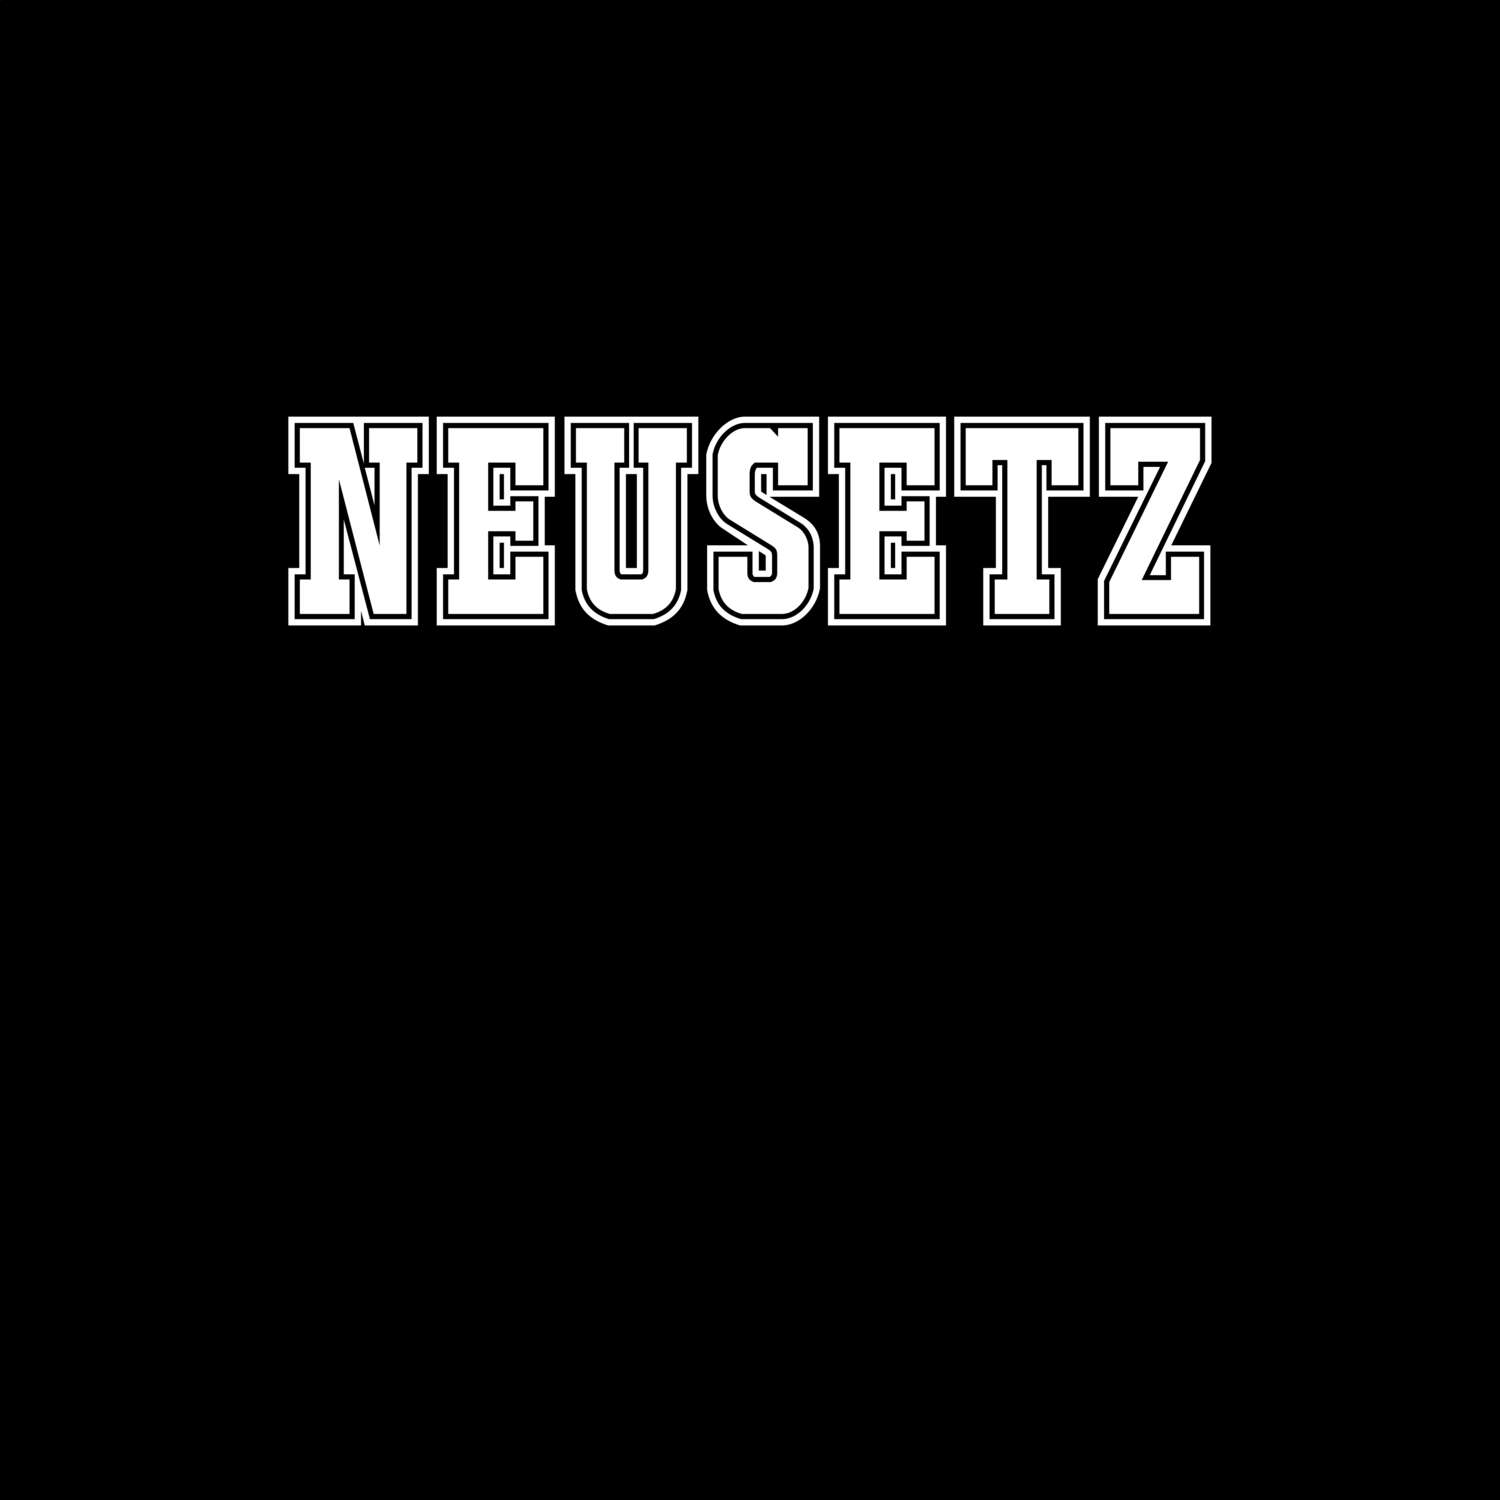 Neusetz T-Shirt »Classic«